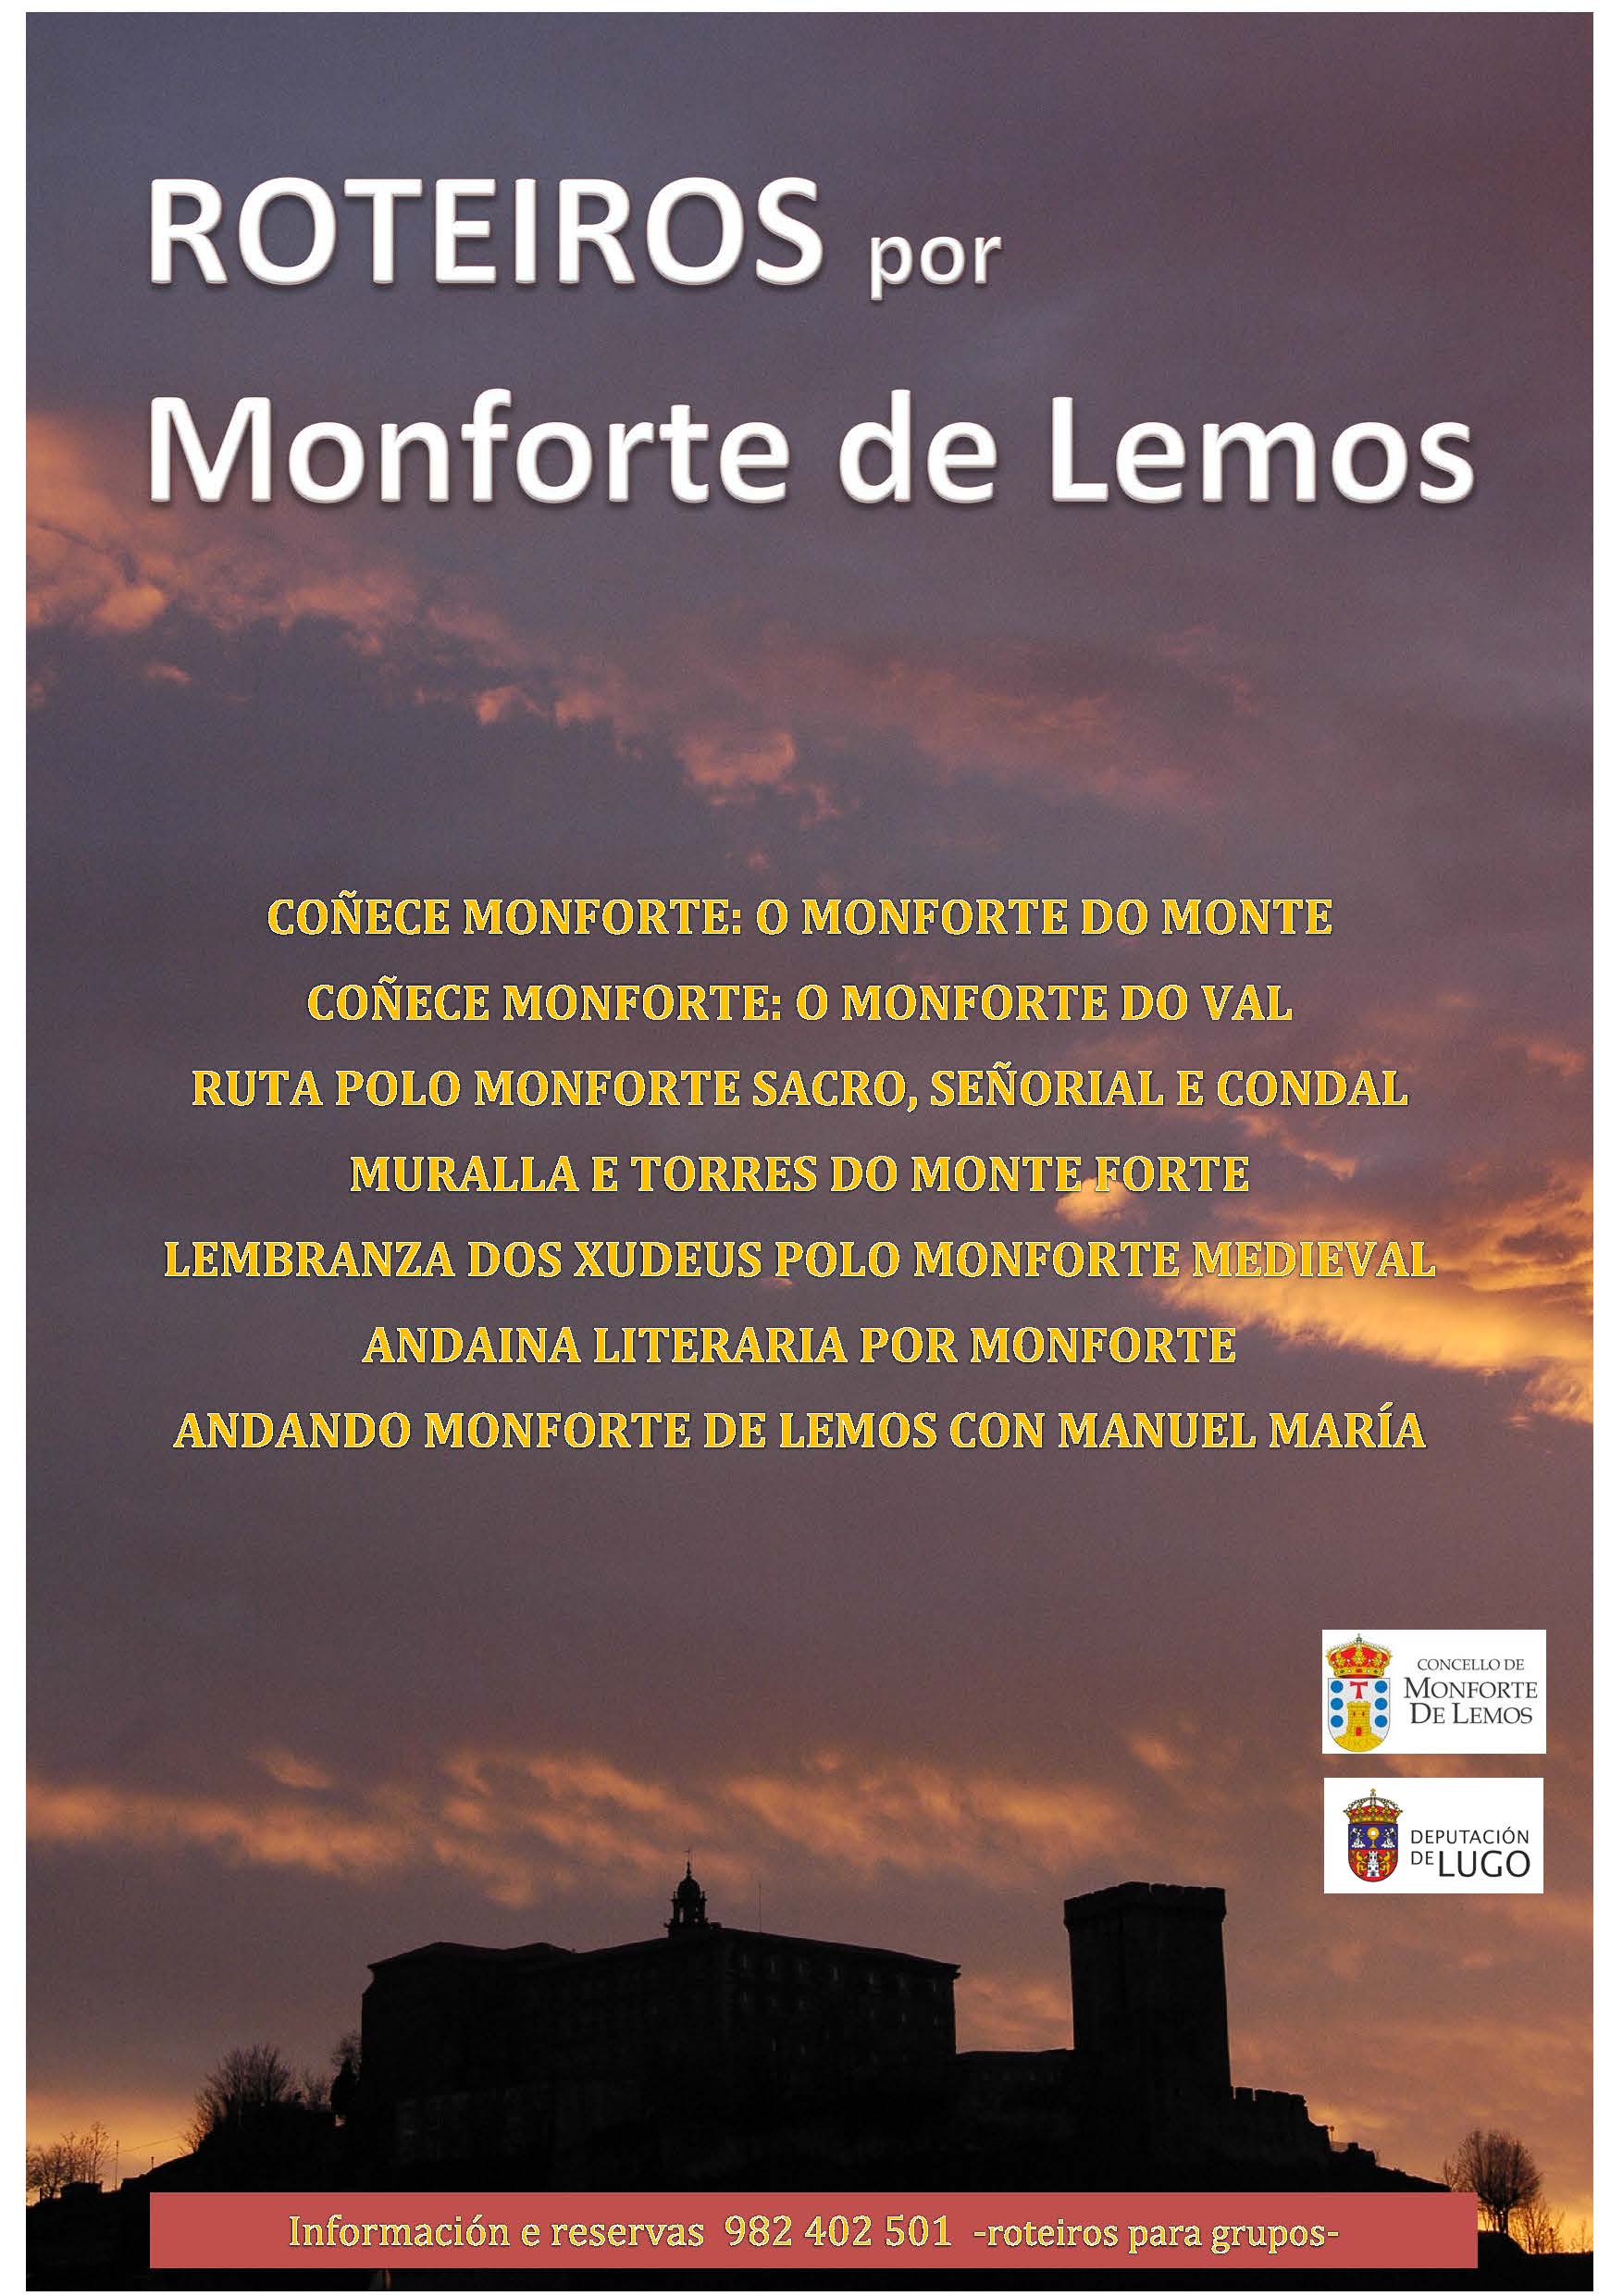 Cartel Roteiros por Monforte de Lemos